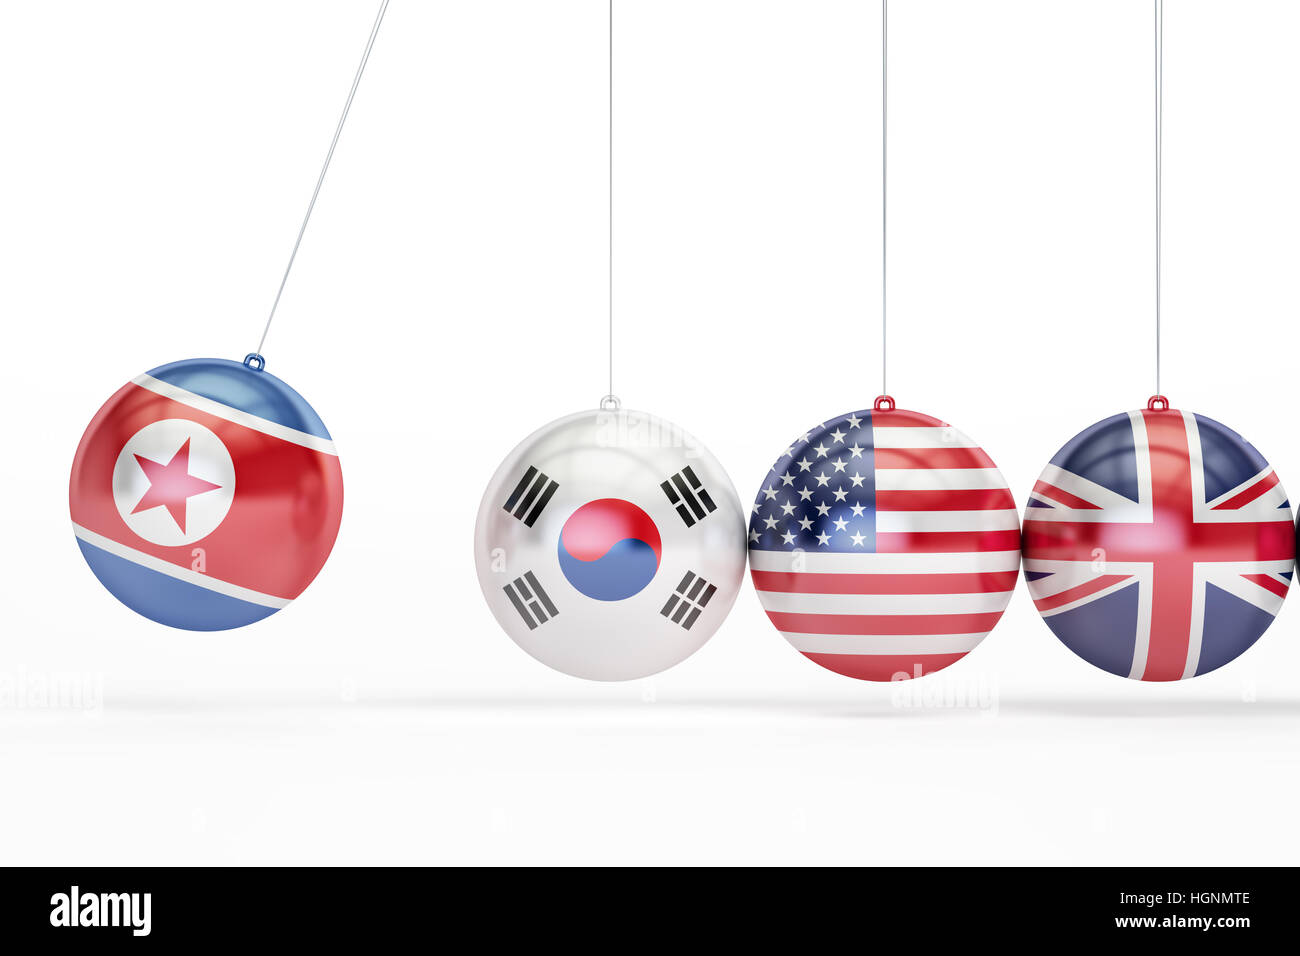 La Corea del Nord e Corea del Sud, Stati Uniti, Gran Bretagna conflitto politico concetto. 3D rendering isolati su sfondo bianco Foto Stock